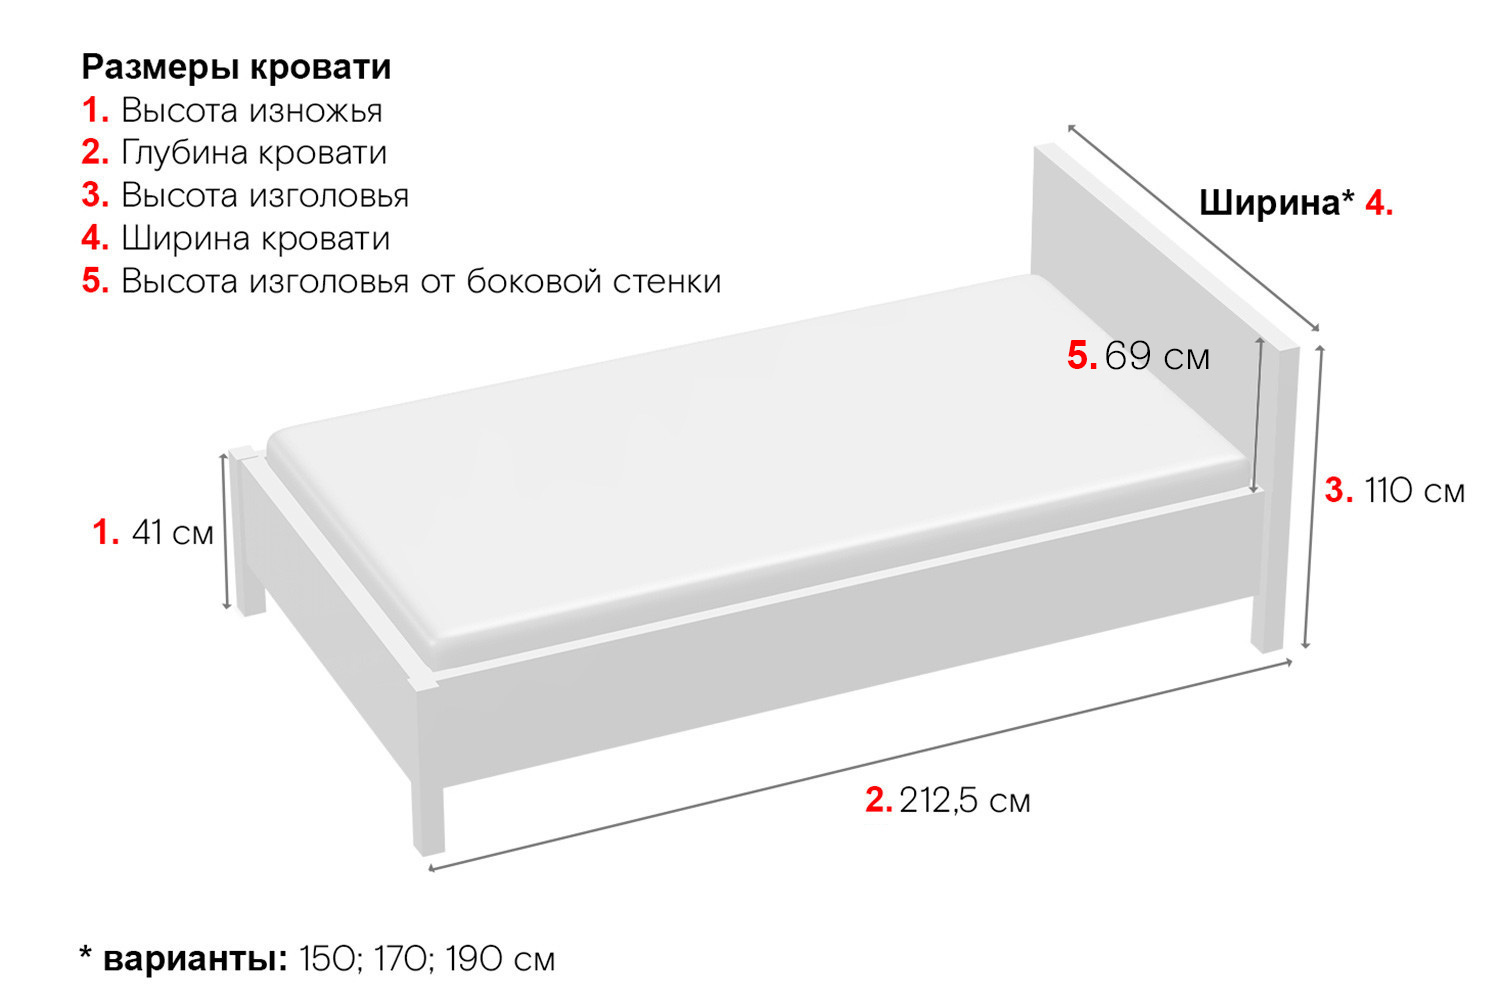 минимальный разрыв между длинными сторонами кровати должен составлять